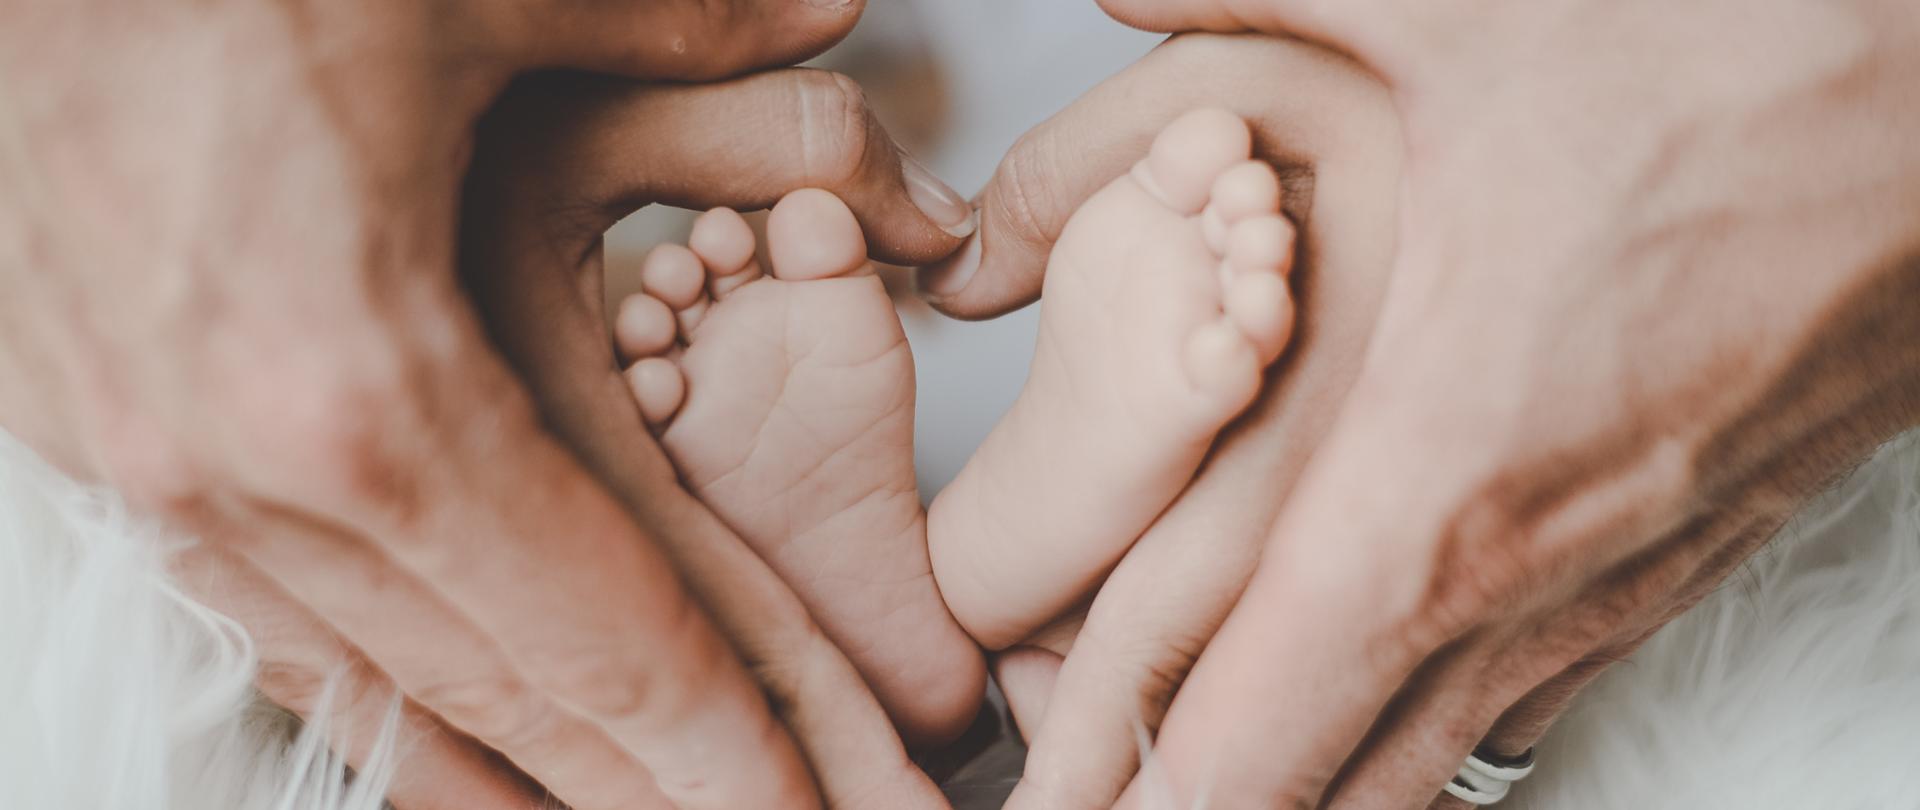 rodzice trzymający stopy noworodka, dłonie ułożone w kształt serca, na dole zdjęcia białe futro